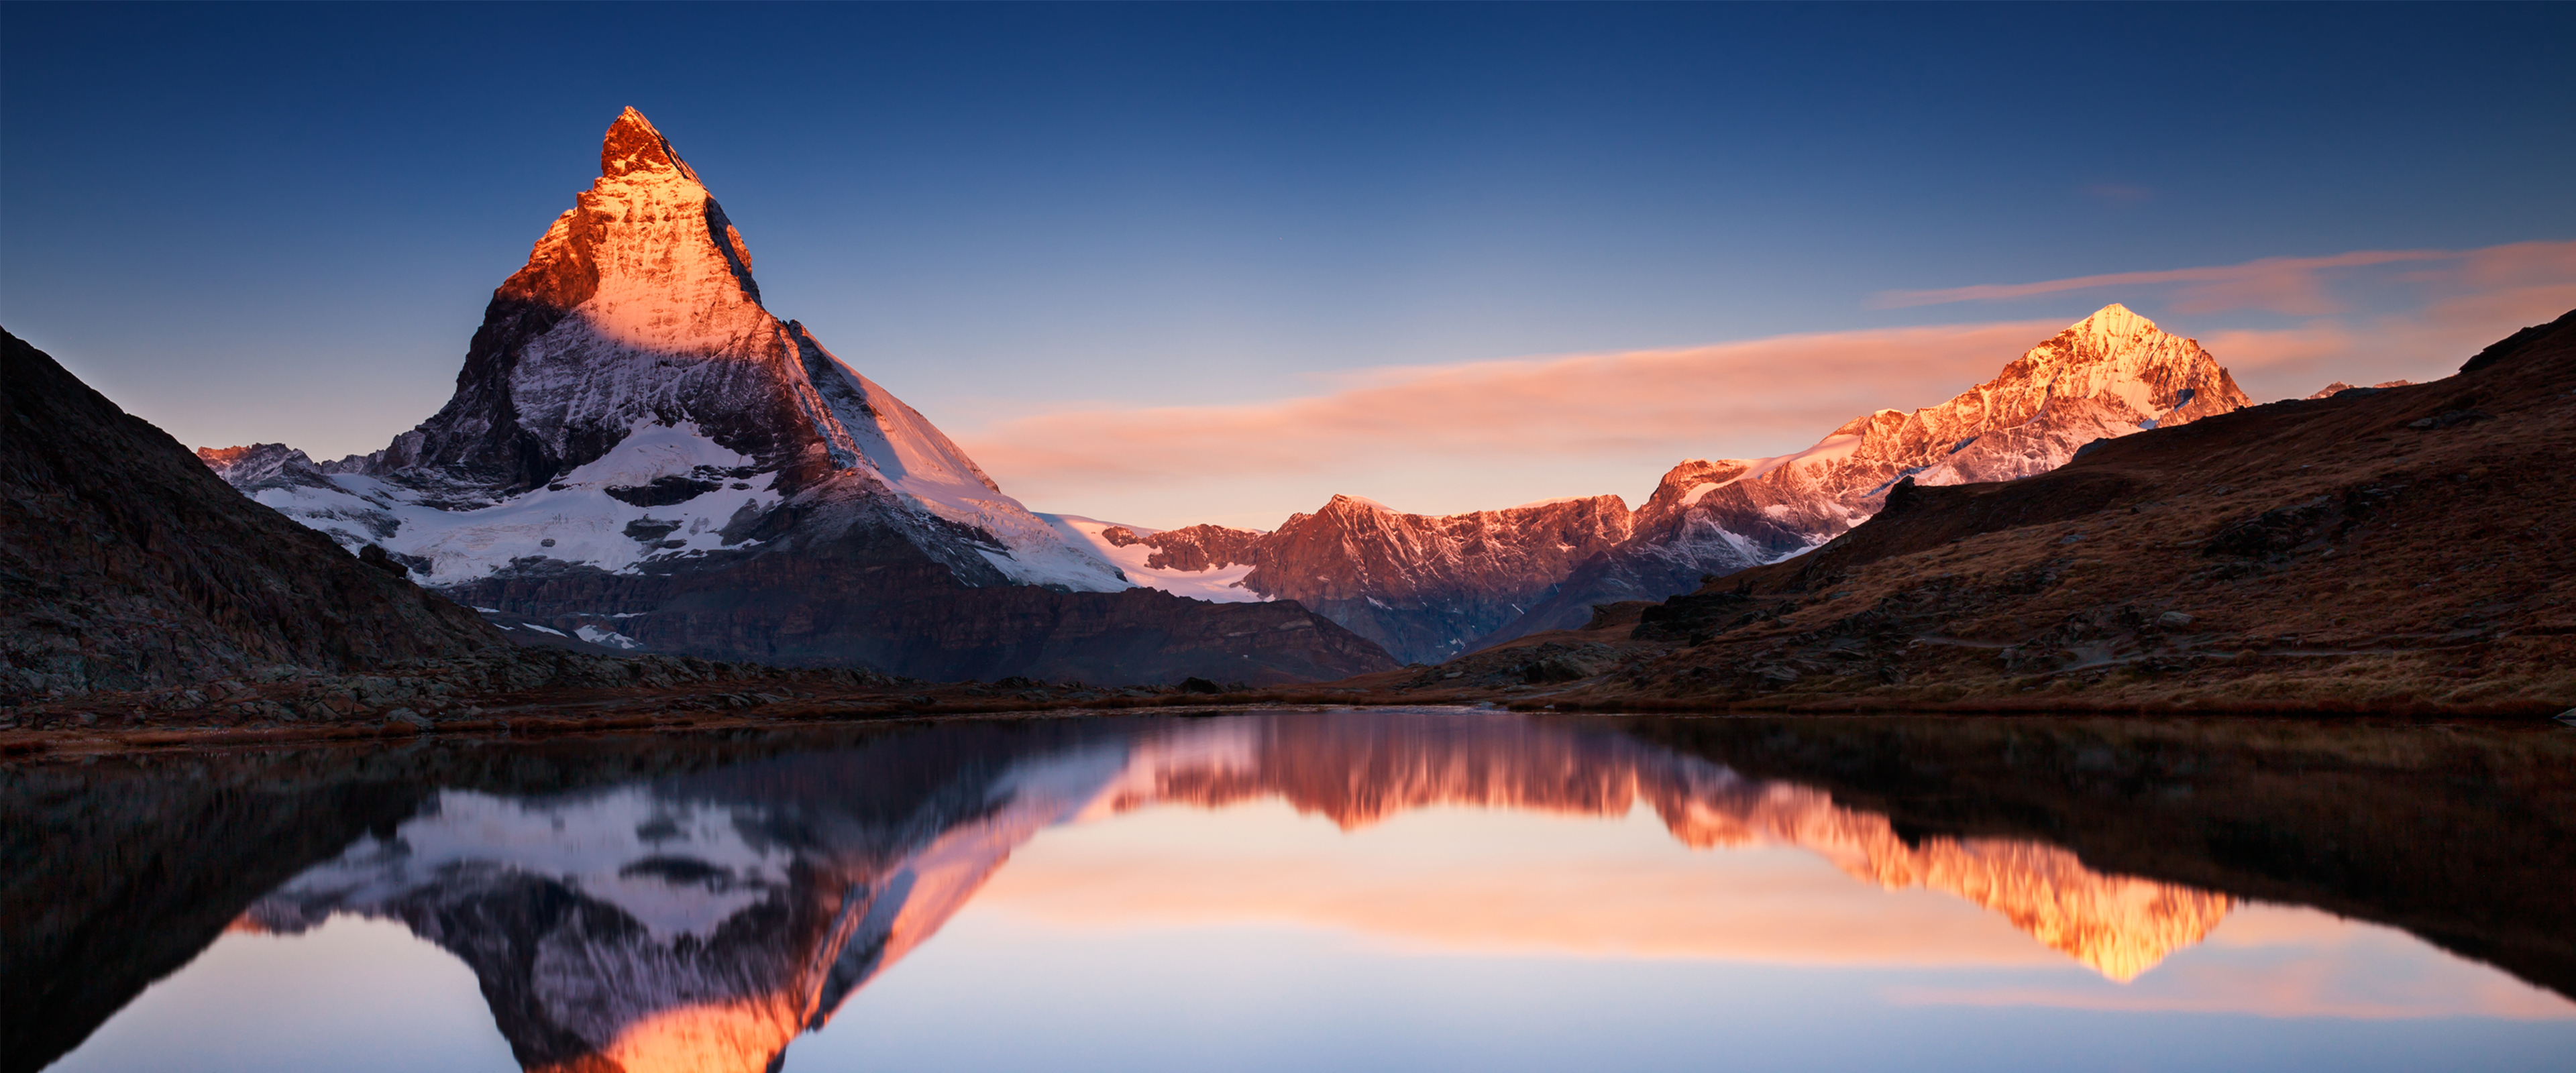 General 3840x1600 reflection water mountains snow nature Matterhorn